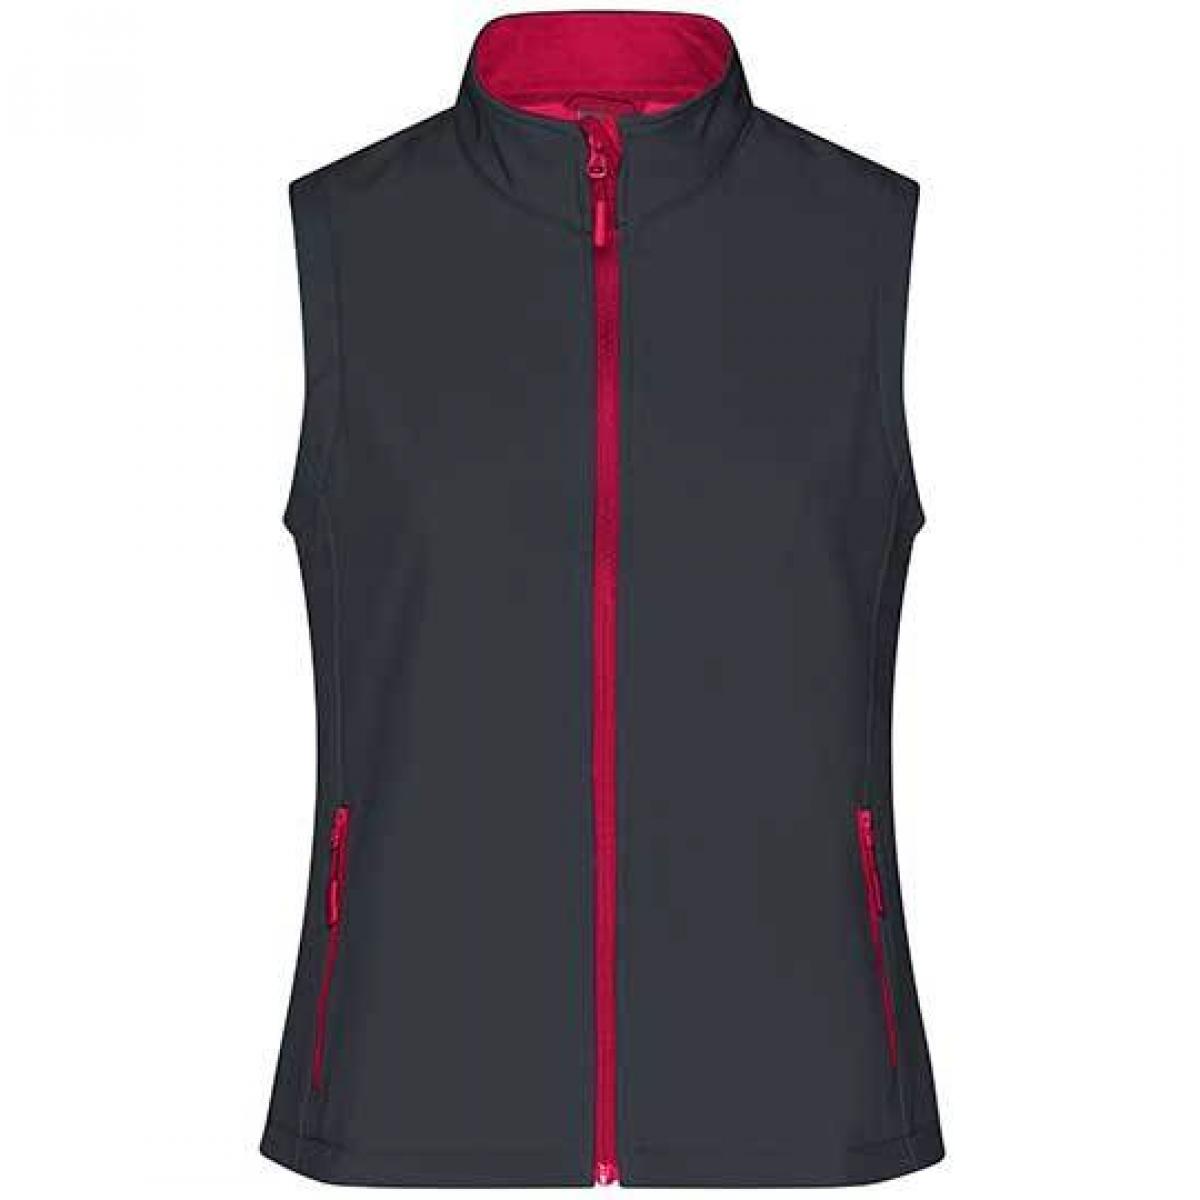 Hersteller: James+Nicholson Herstellernummer: JN1127 Artikelbezeichnung: Damen Promo Softshell Vest / Wasserabweisend, winddicht Farbe: Iron Grey/Red